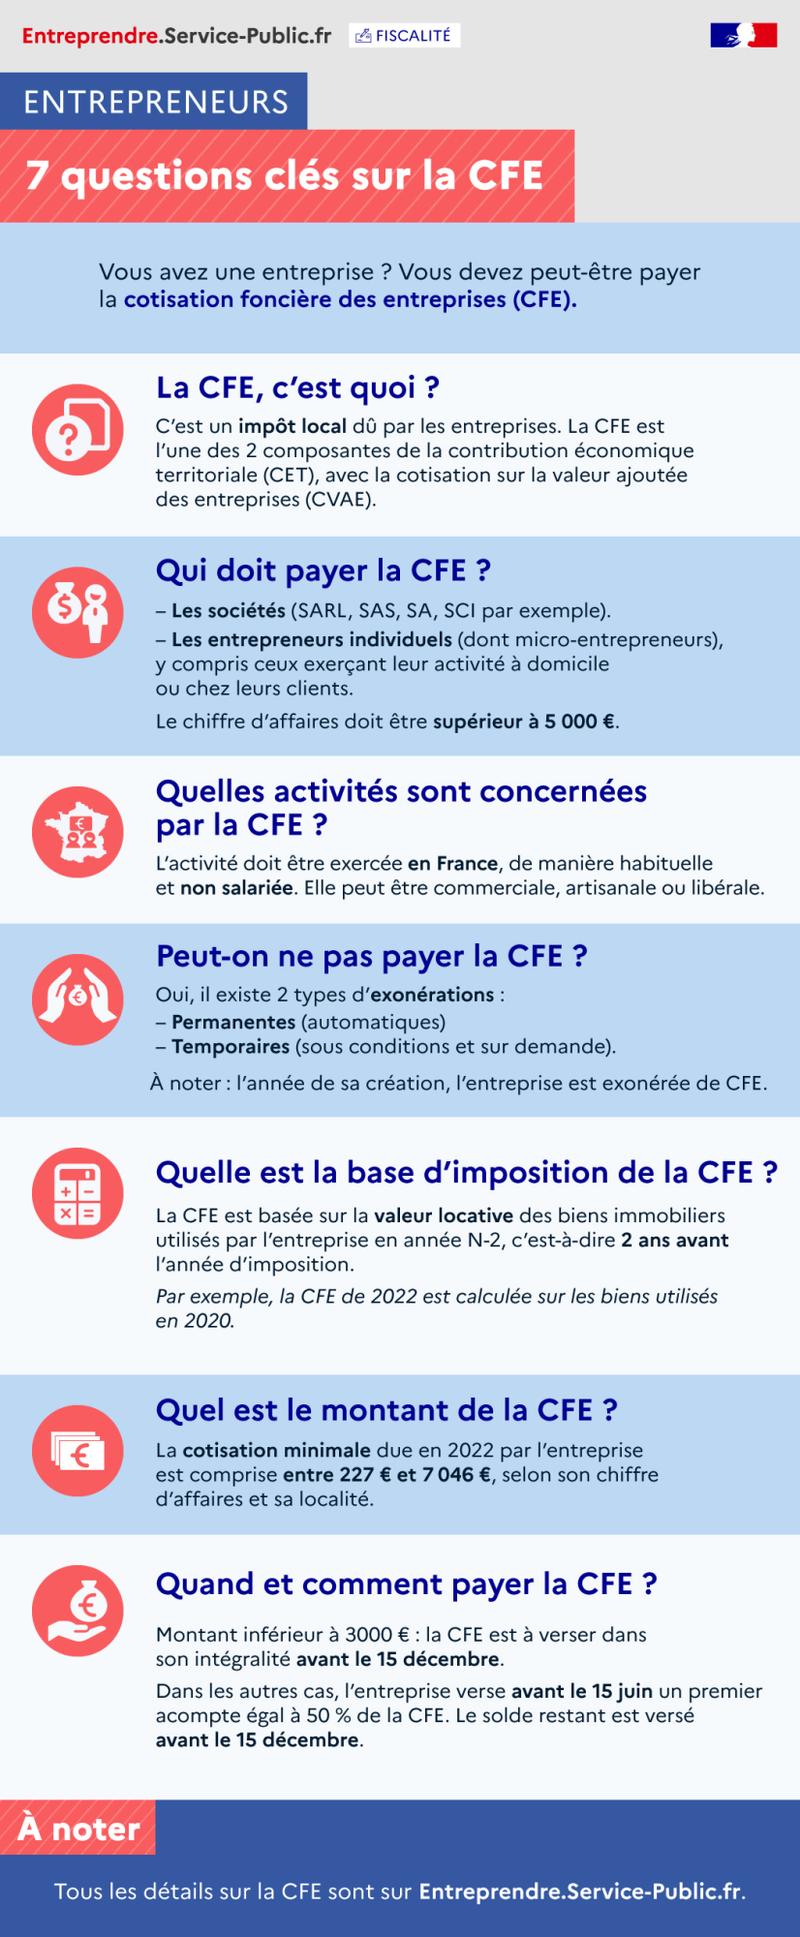 7 key questions on the CFE - plus de détails dans le texte suivant l’infographie